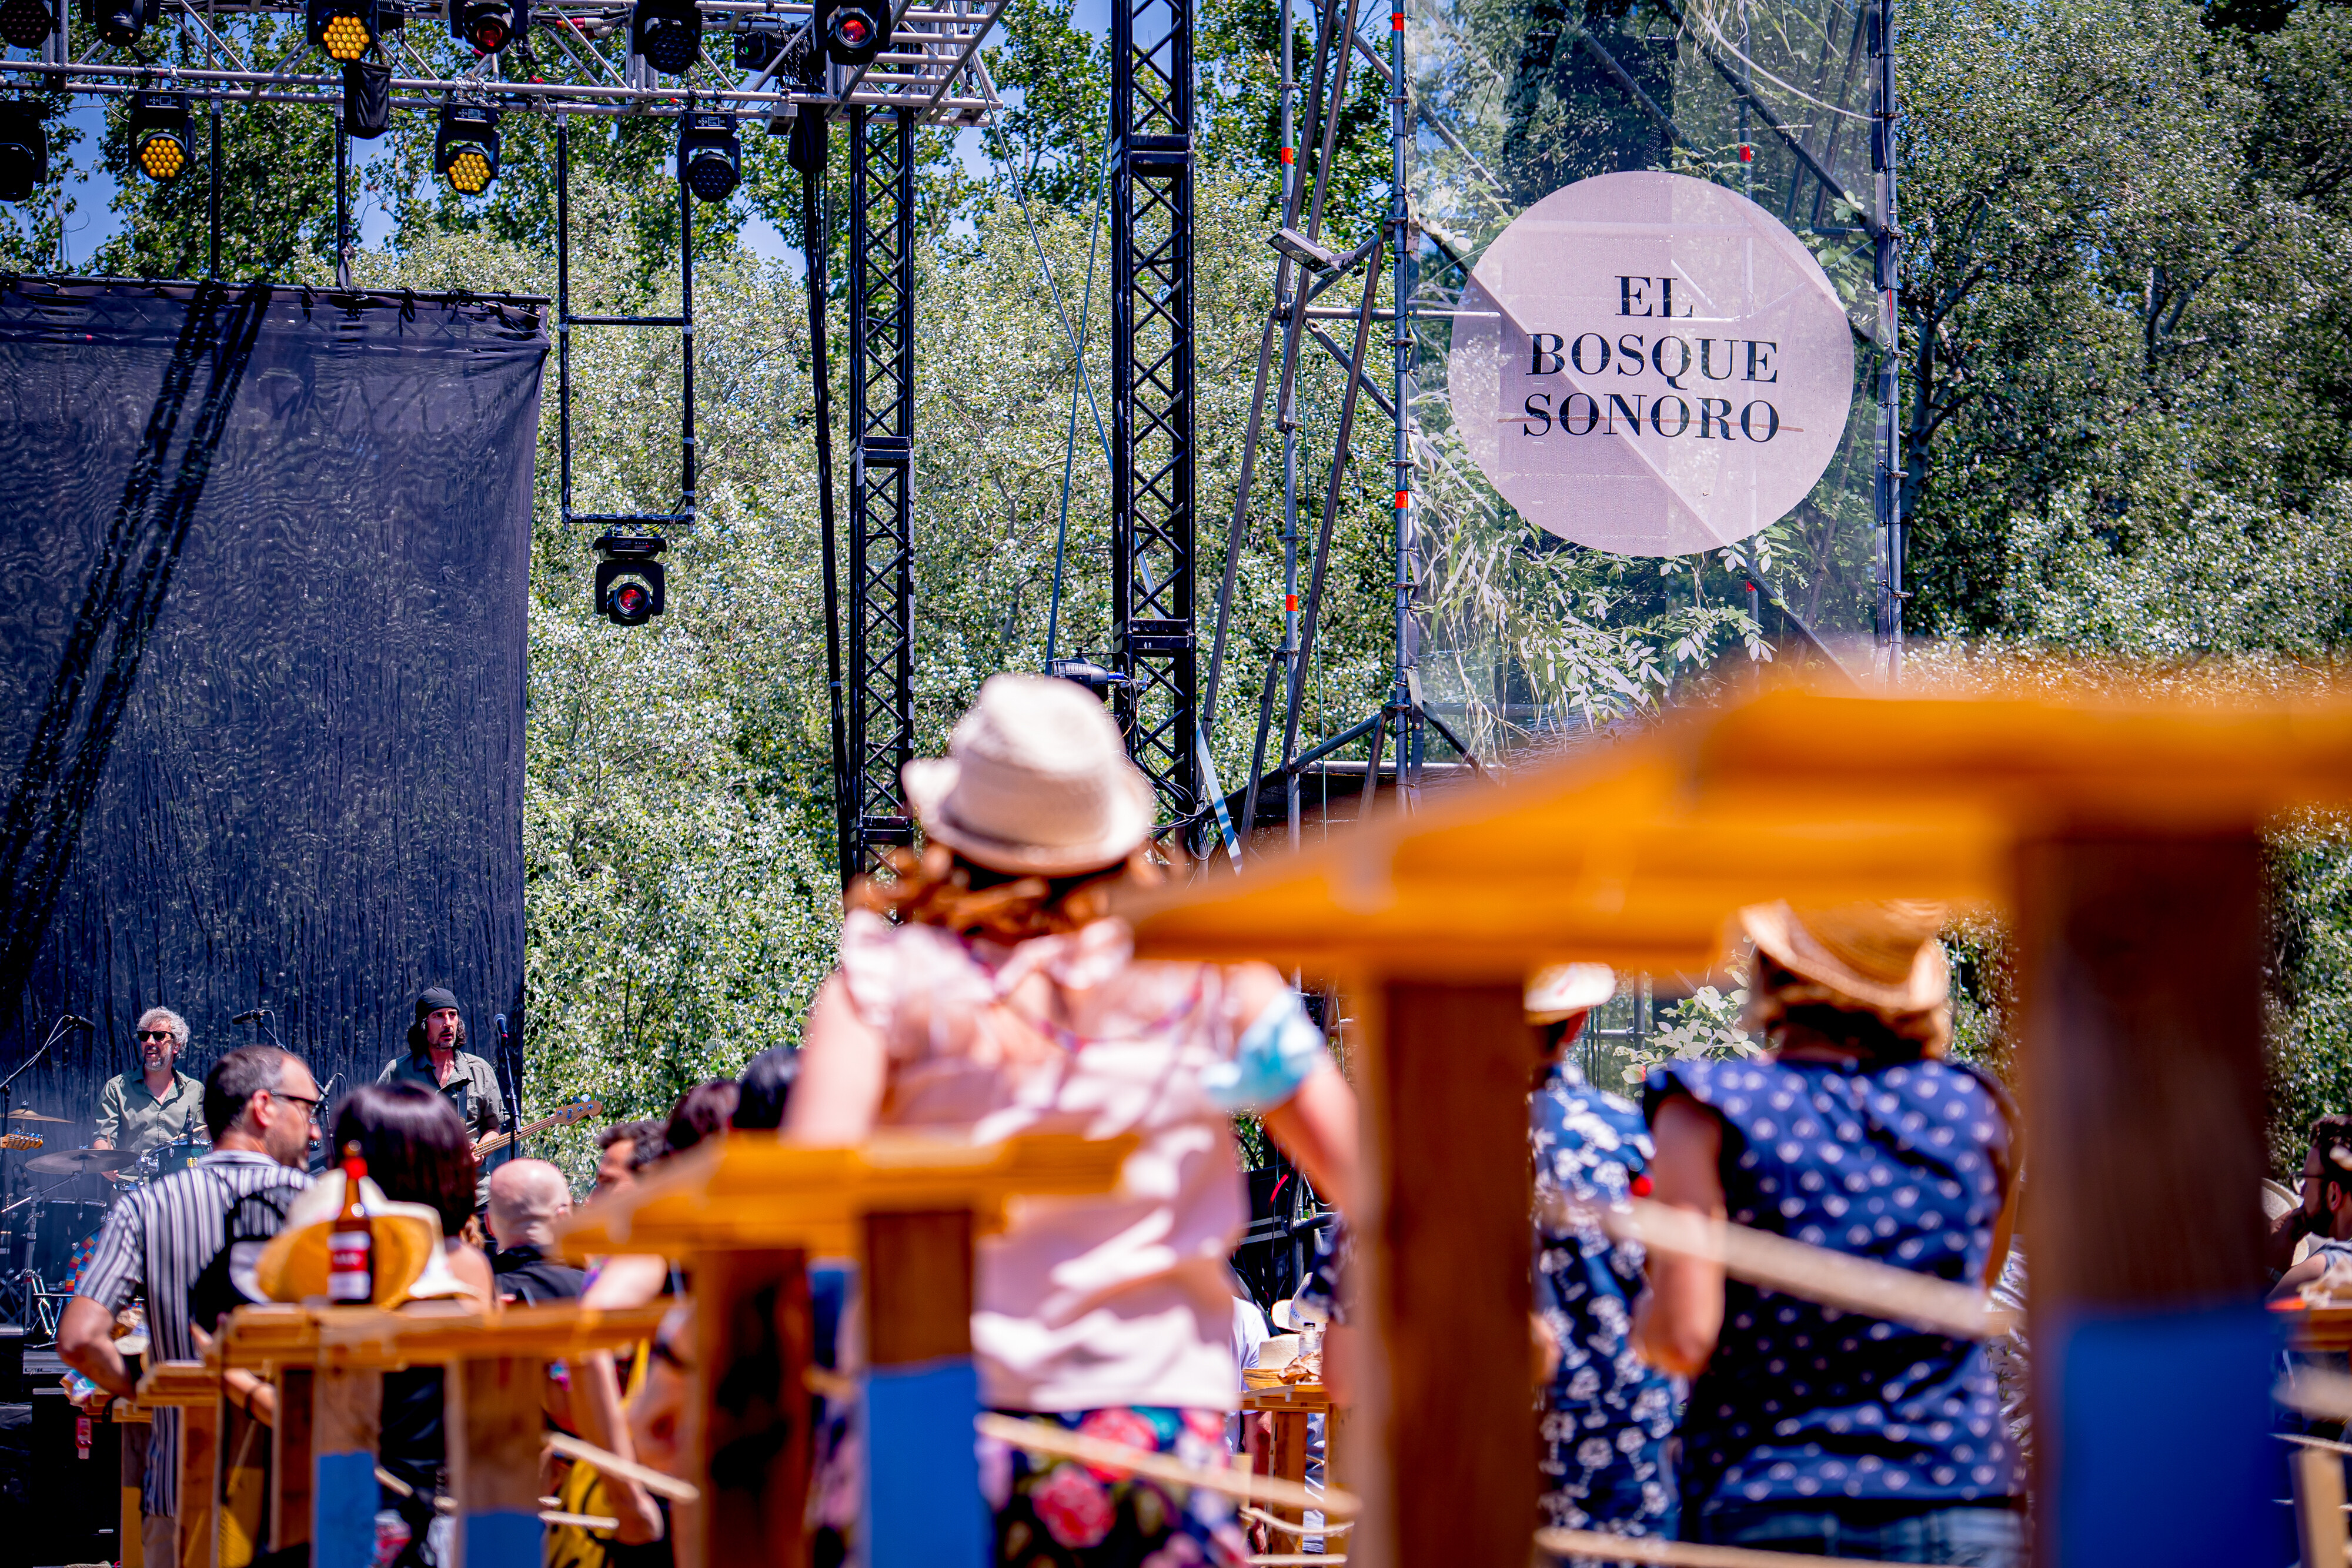 Festival Bosque Sonoro